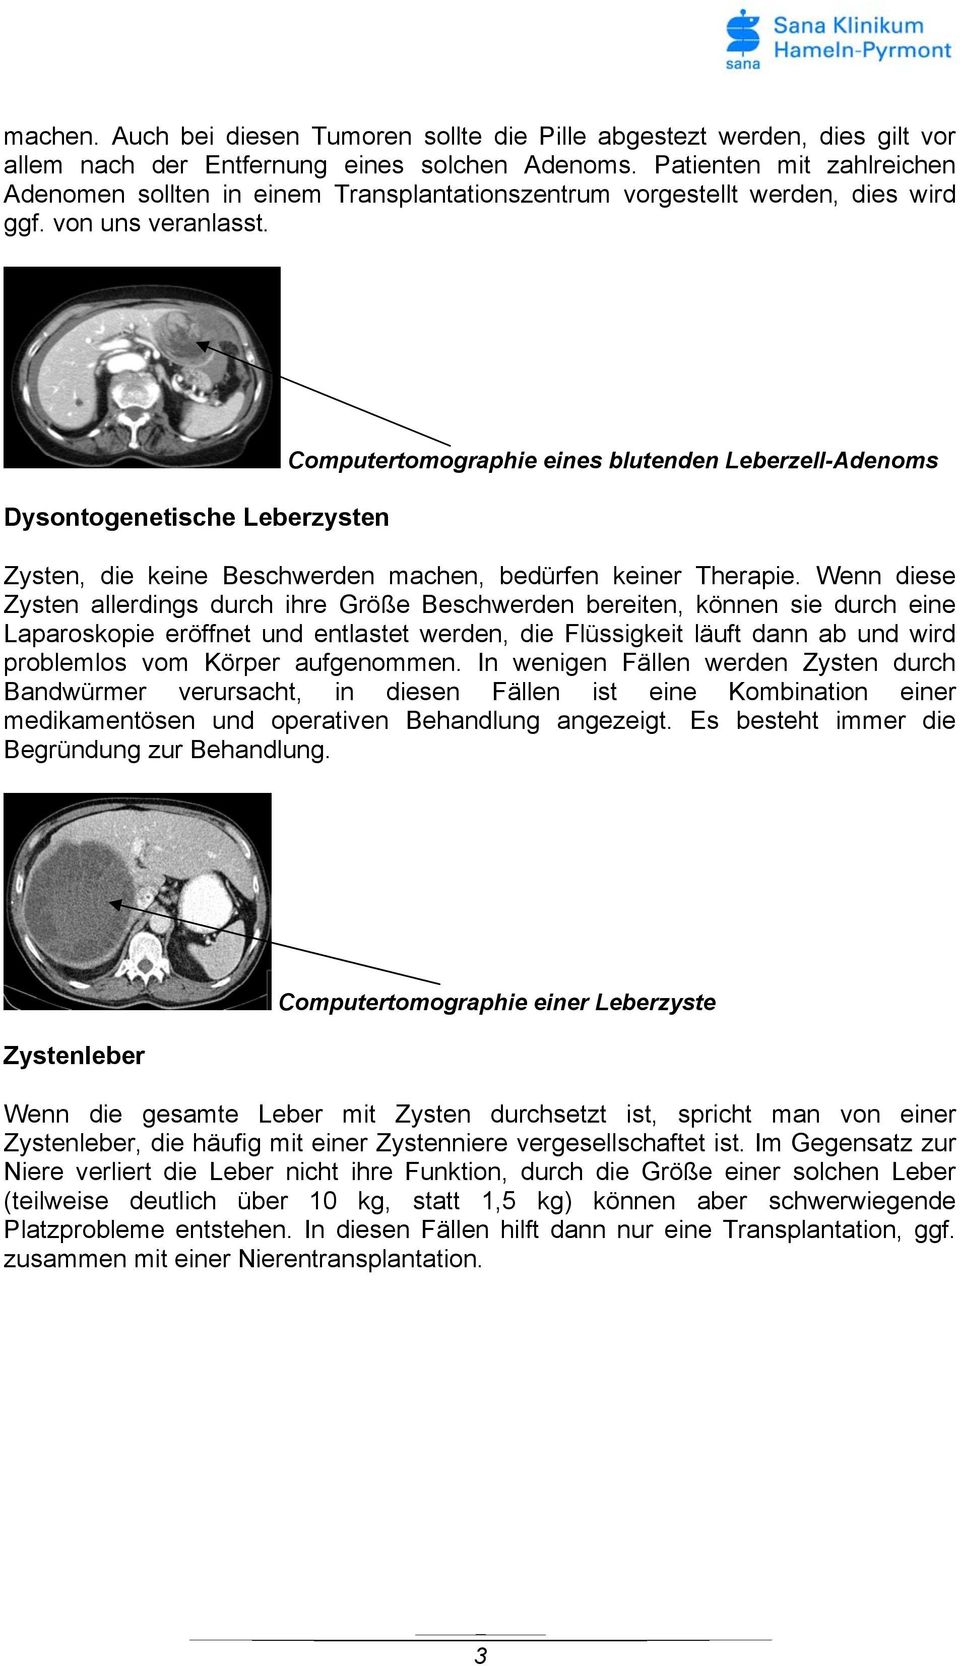 Dysontogenetische Leberzysten Computertomographie eines blutenden Leberzell-Adenoms Zysten, die keine Beschwerden machen, bedürfen keiner Therapie.